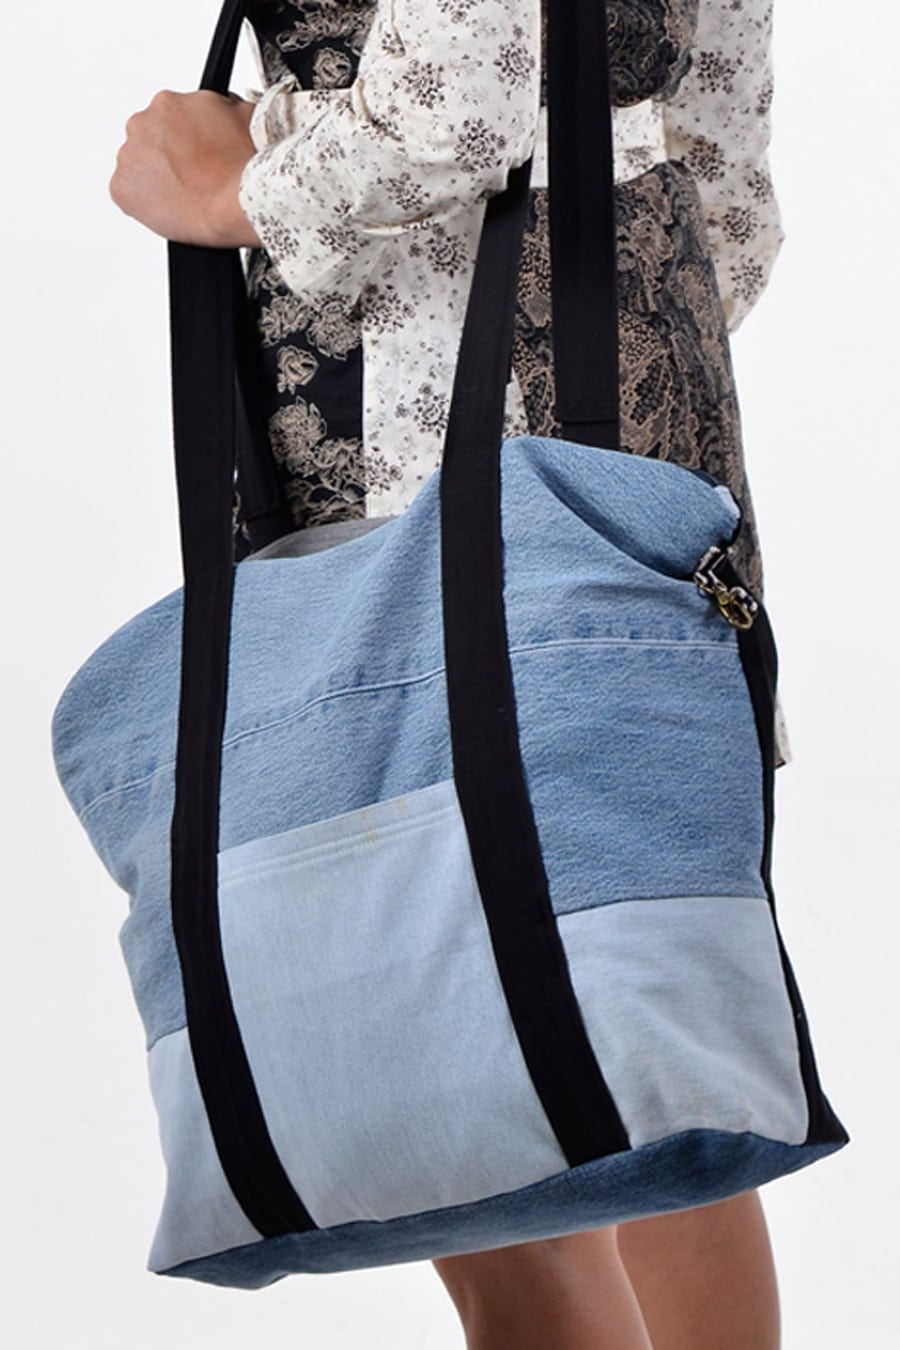 Levi's - Blue Denim Belt Bag (33cm) | Childrensalon Outlet